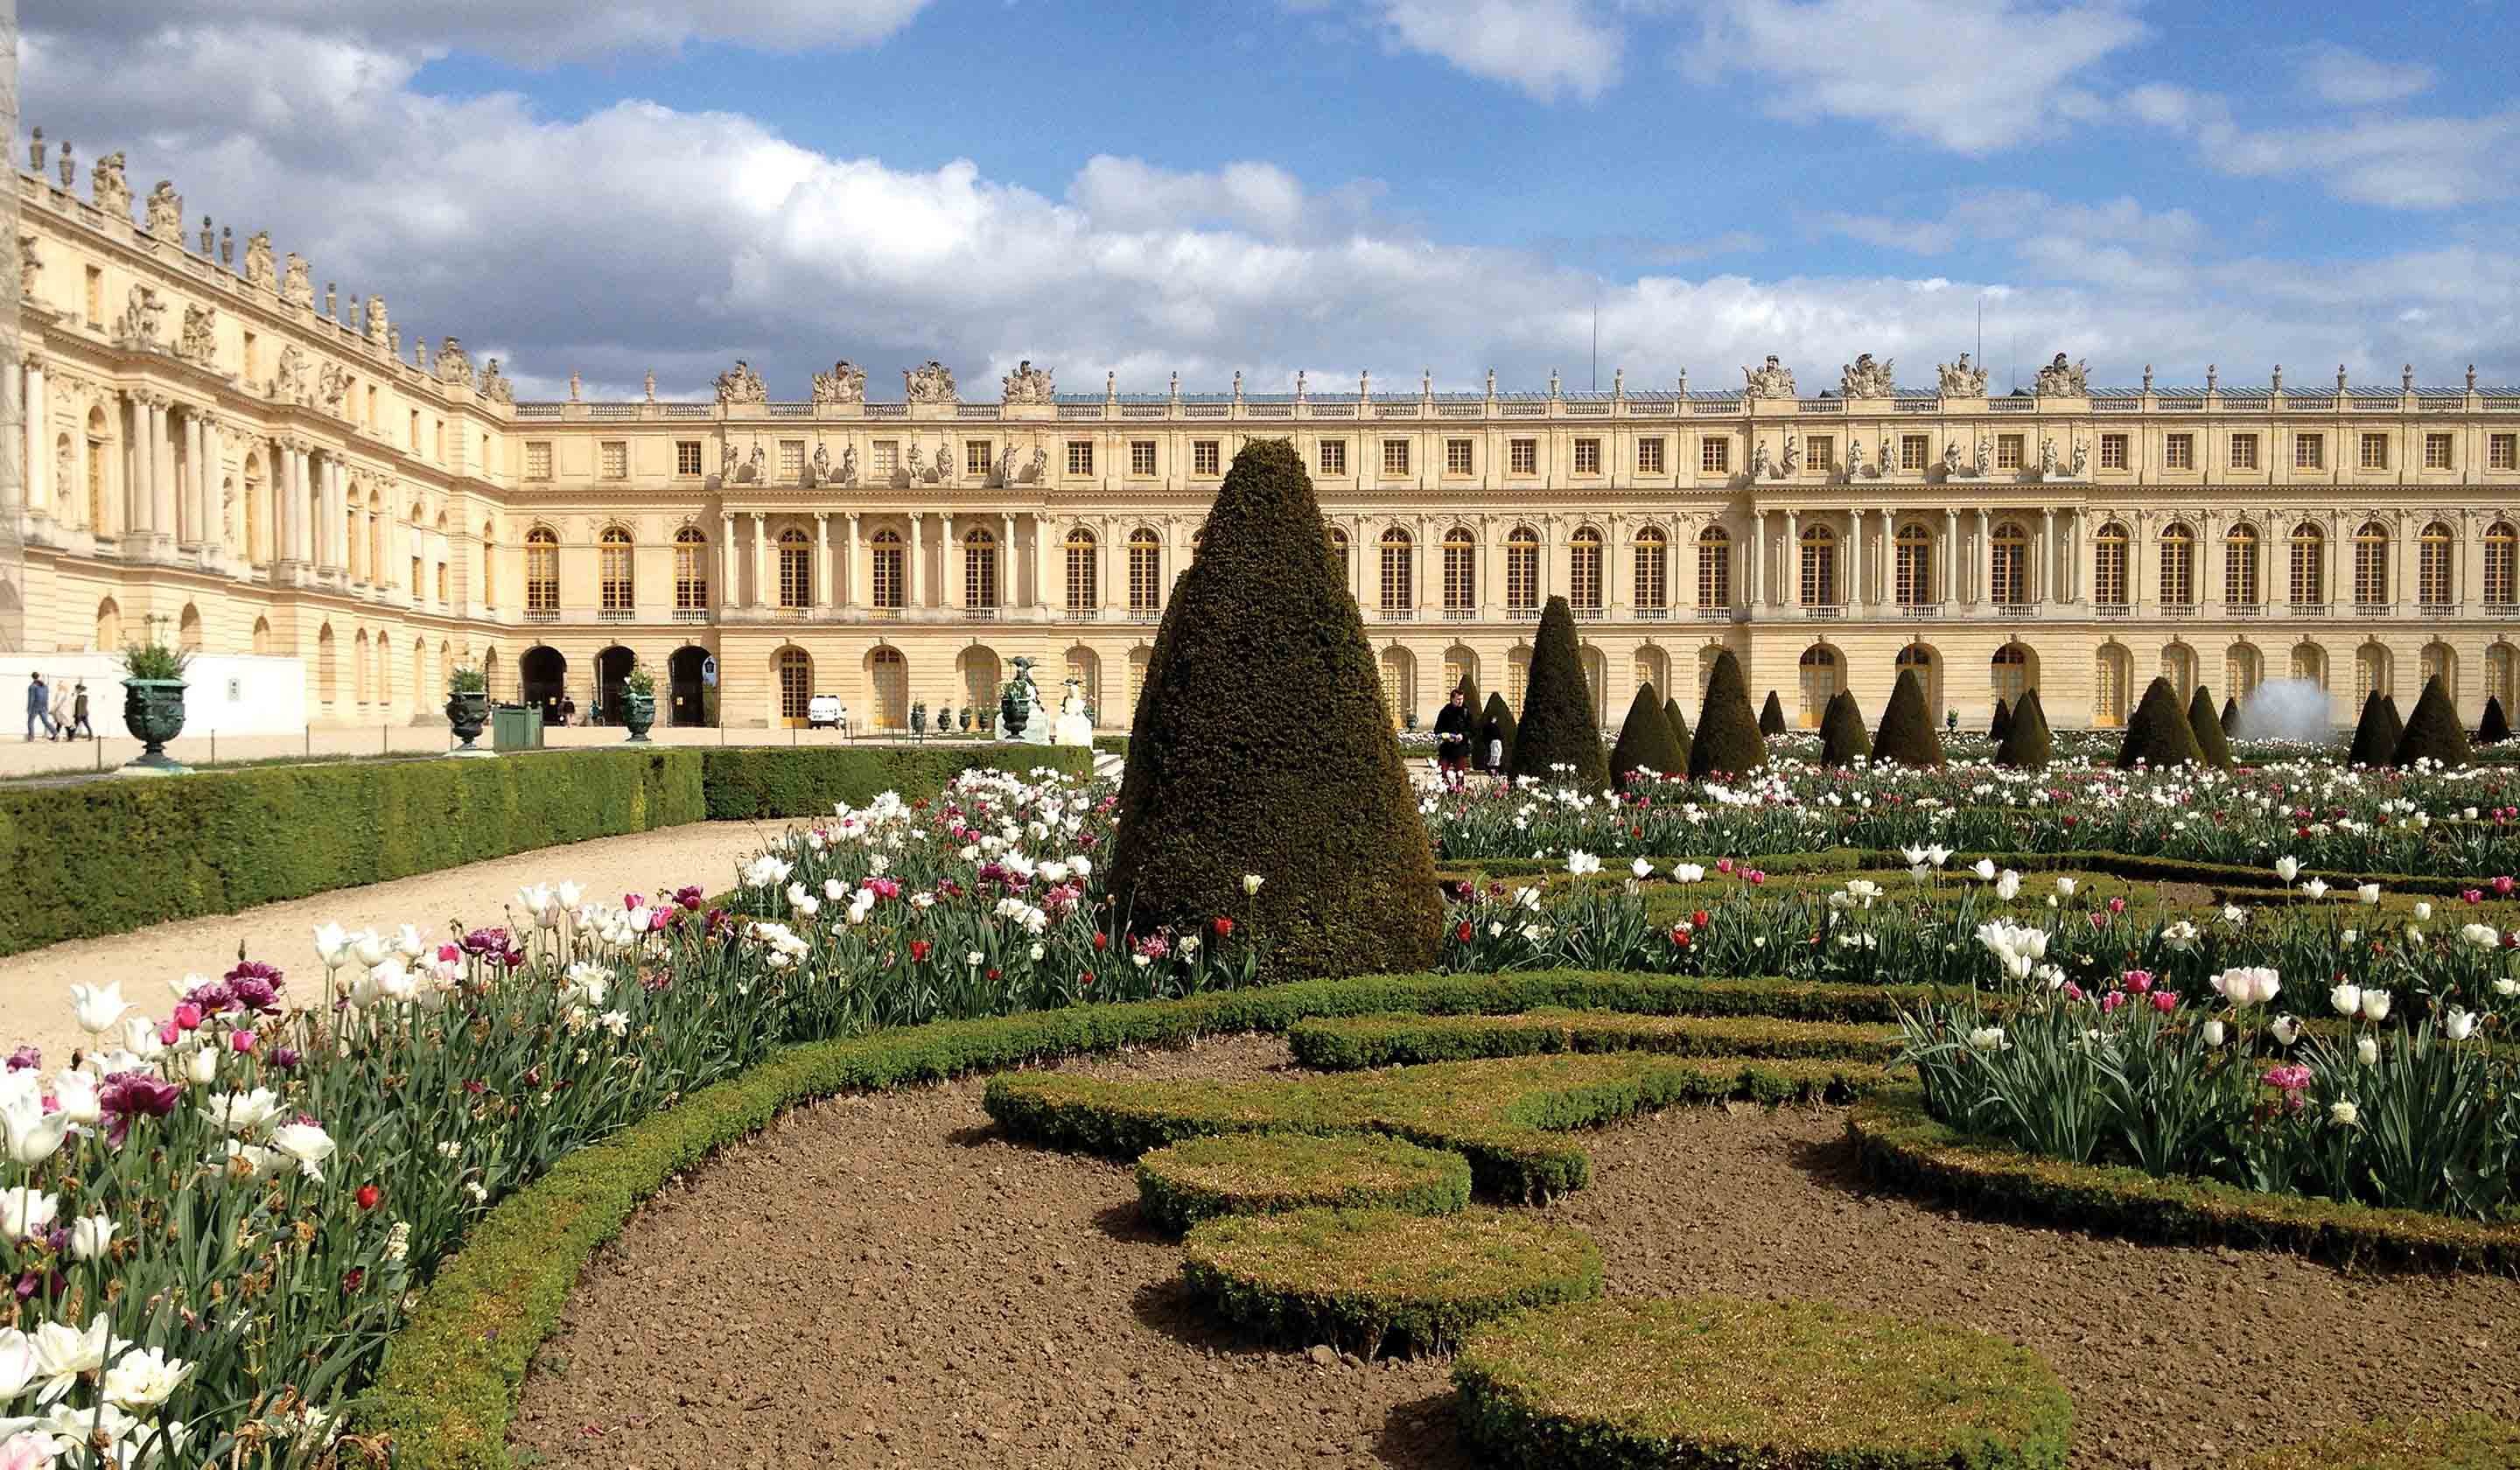 Chateau de versailles. Версальский дворец и парк. Версальский дворец Версаль Франция. Версальский дворец Версаль классицизм. Дворцово парковый ансамбль Версаль в Париже.